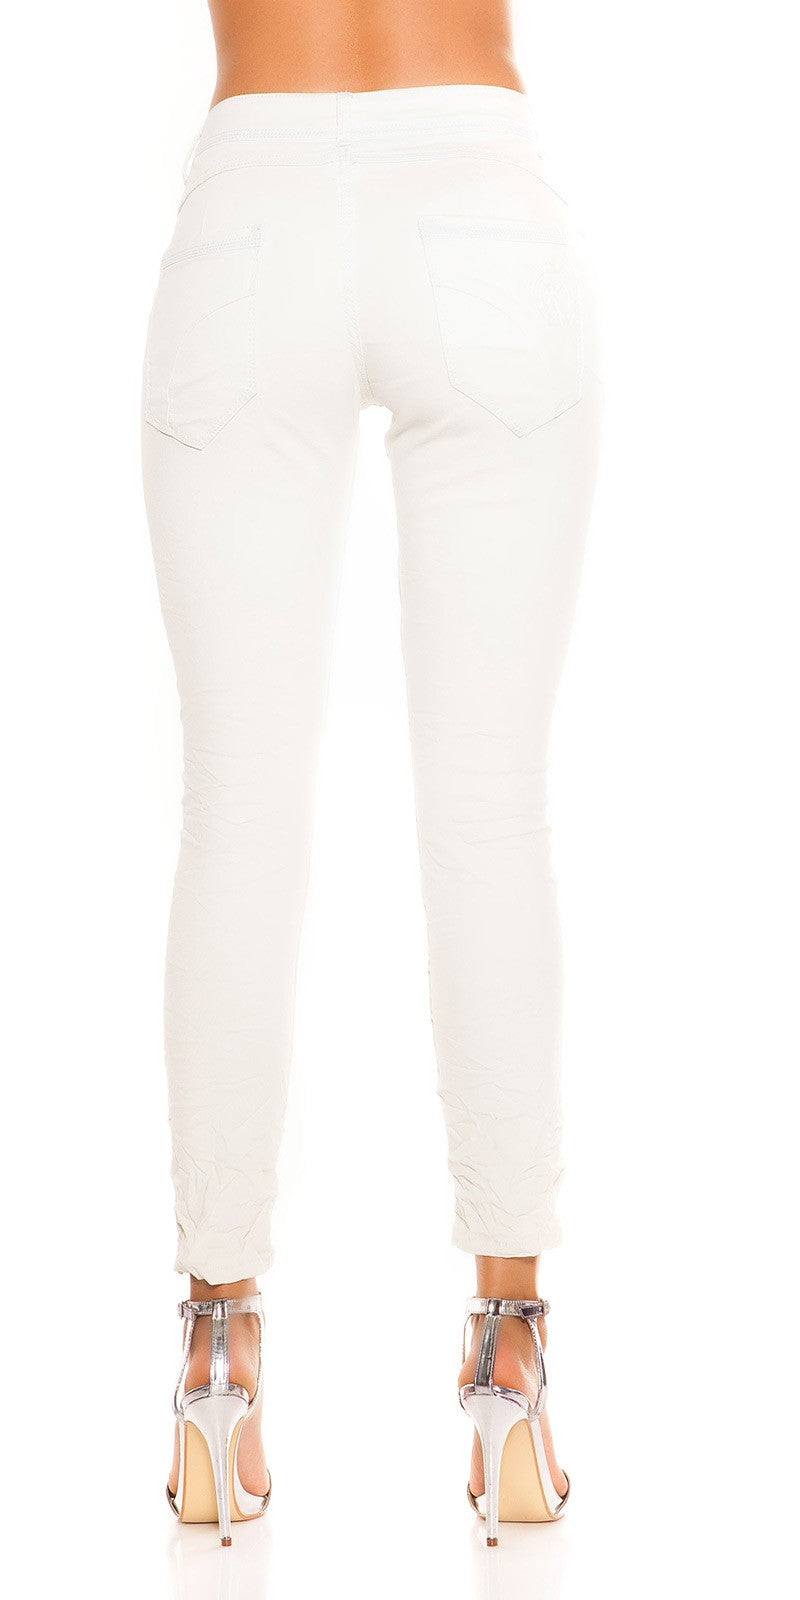 Jeans bianchi con cavallo basso 0000K600-273B